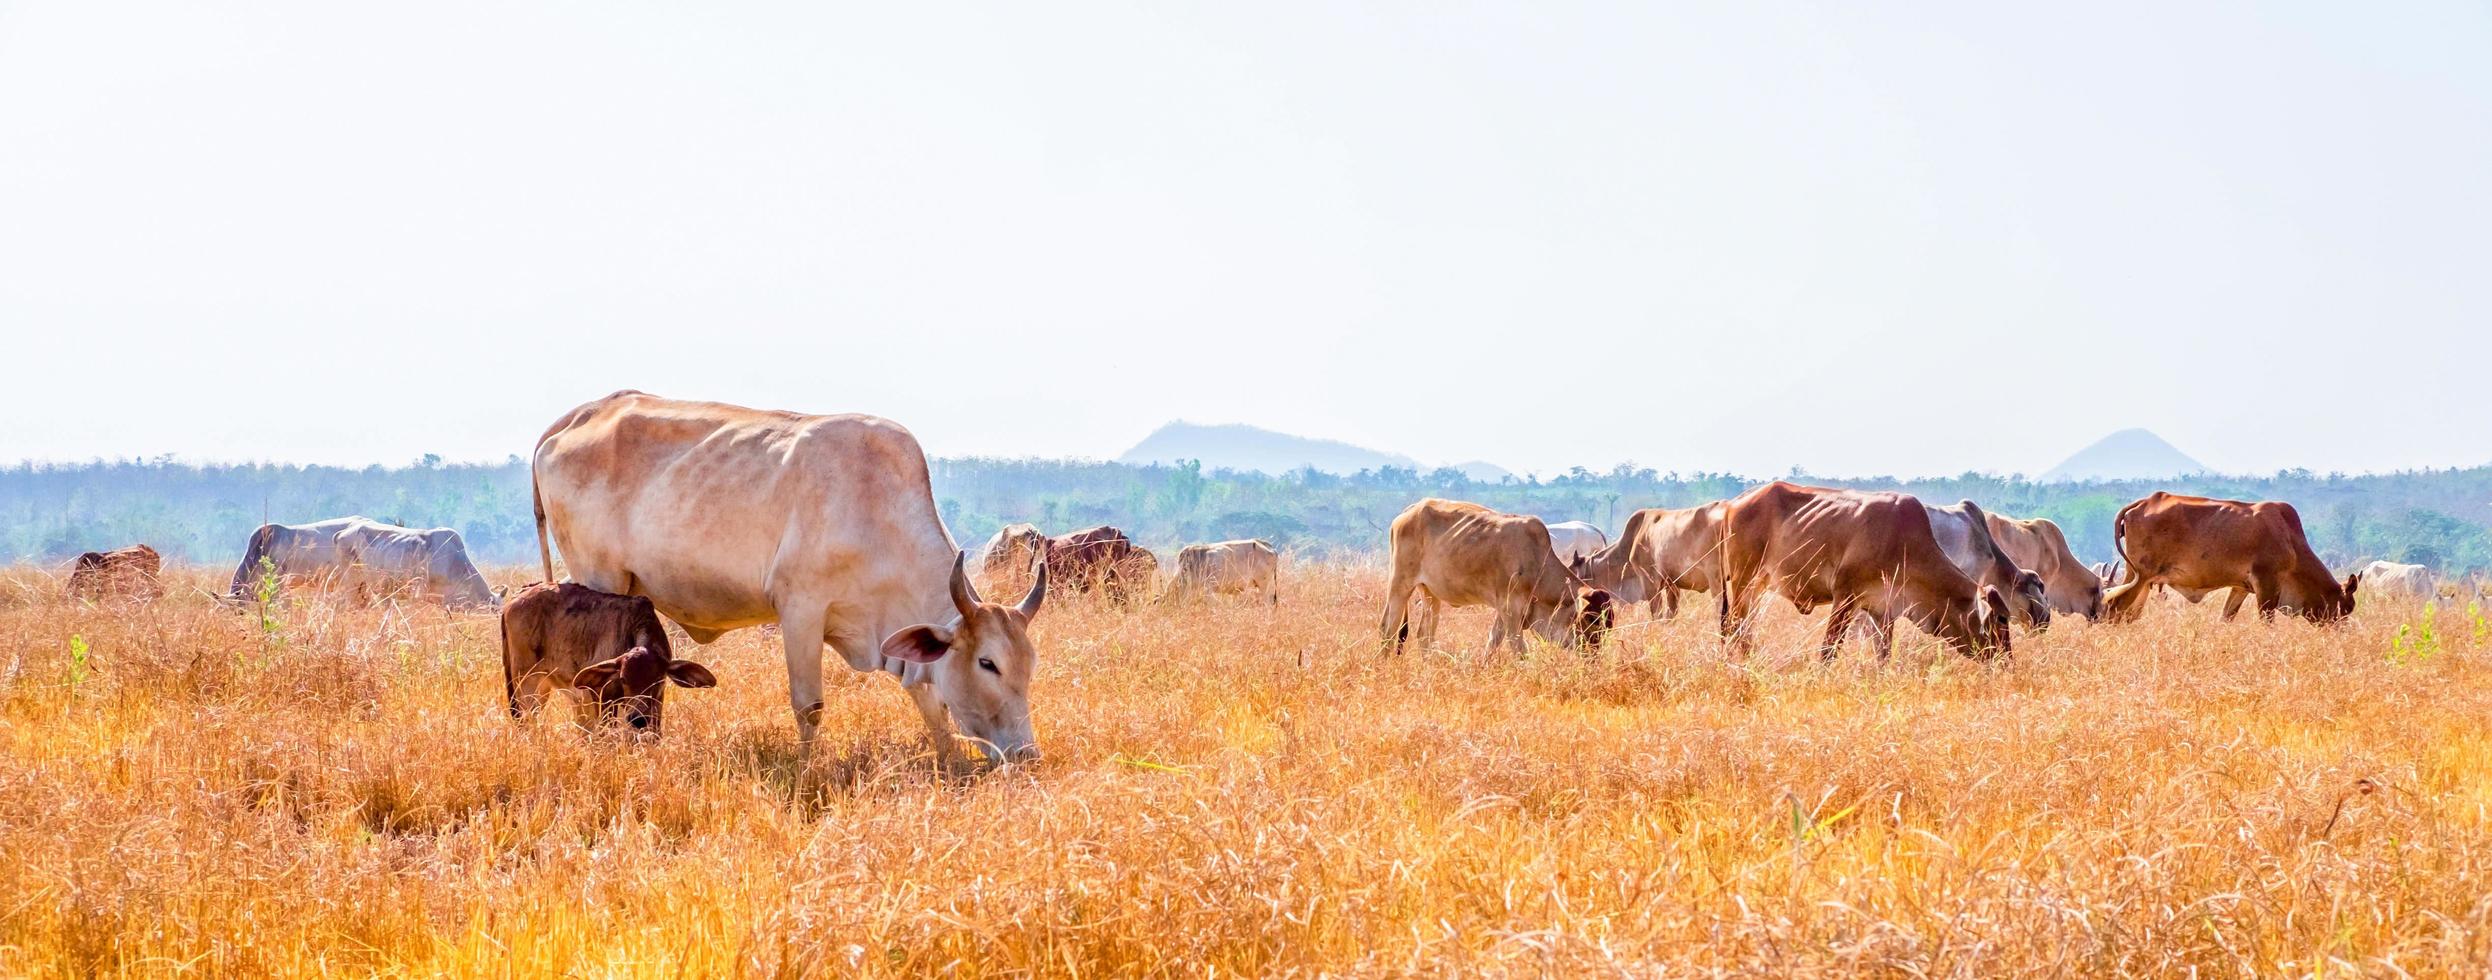 Eine Herde einheimischer brauner Kühe, die Heu auf einer ländlichen Wiese essen. Herde von Kühen grasen an klaren Tagen auf Wiesen in hügeligen Landschaften und Wiesen. foto